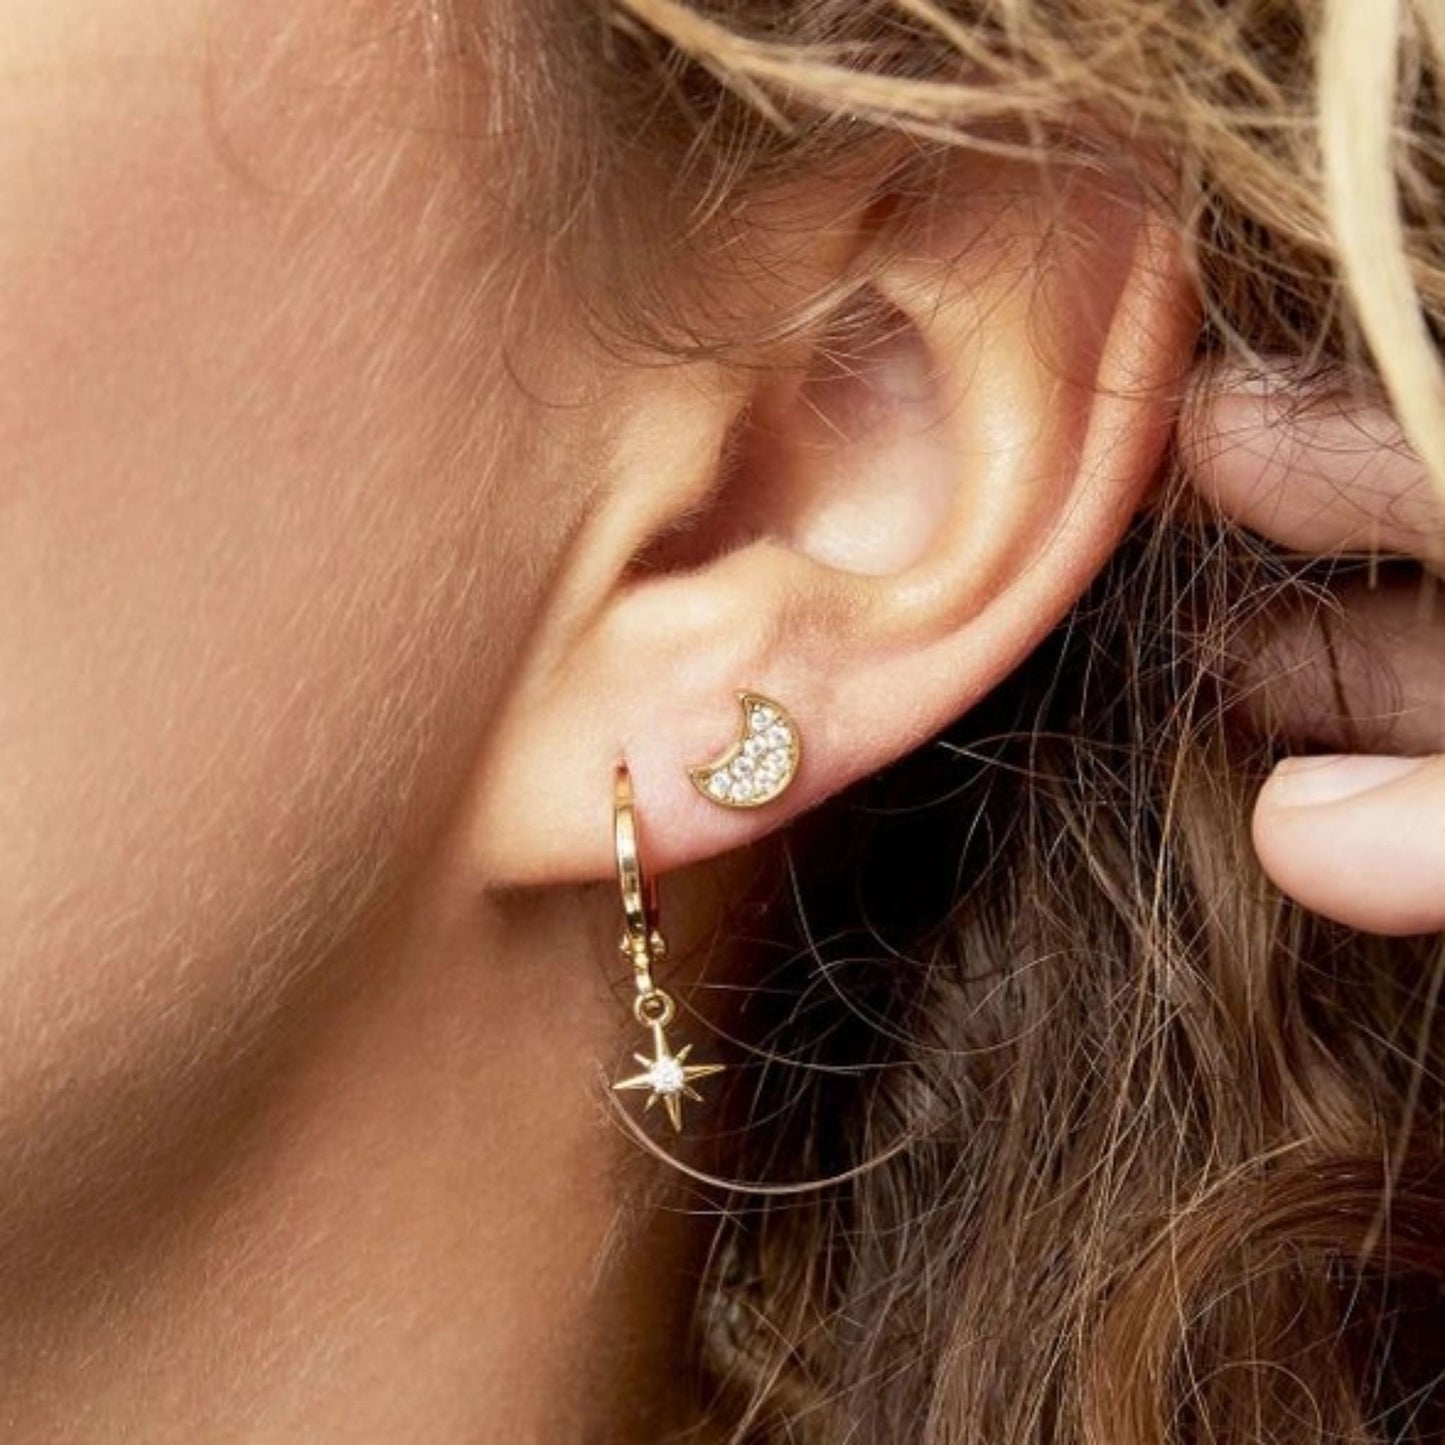 Star Hoop Earrings (Gold or Silver)